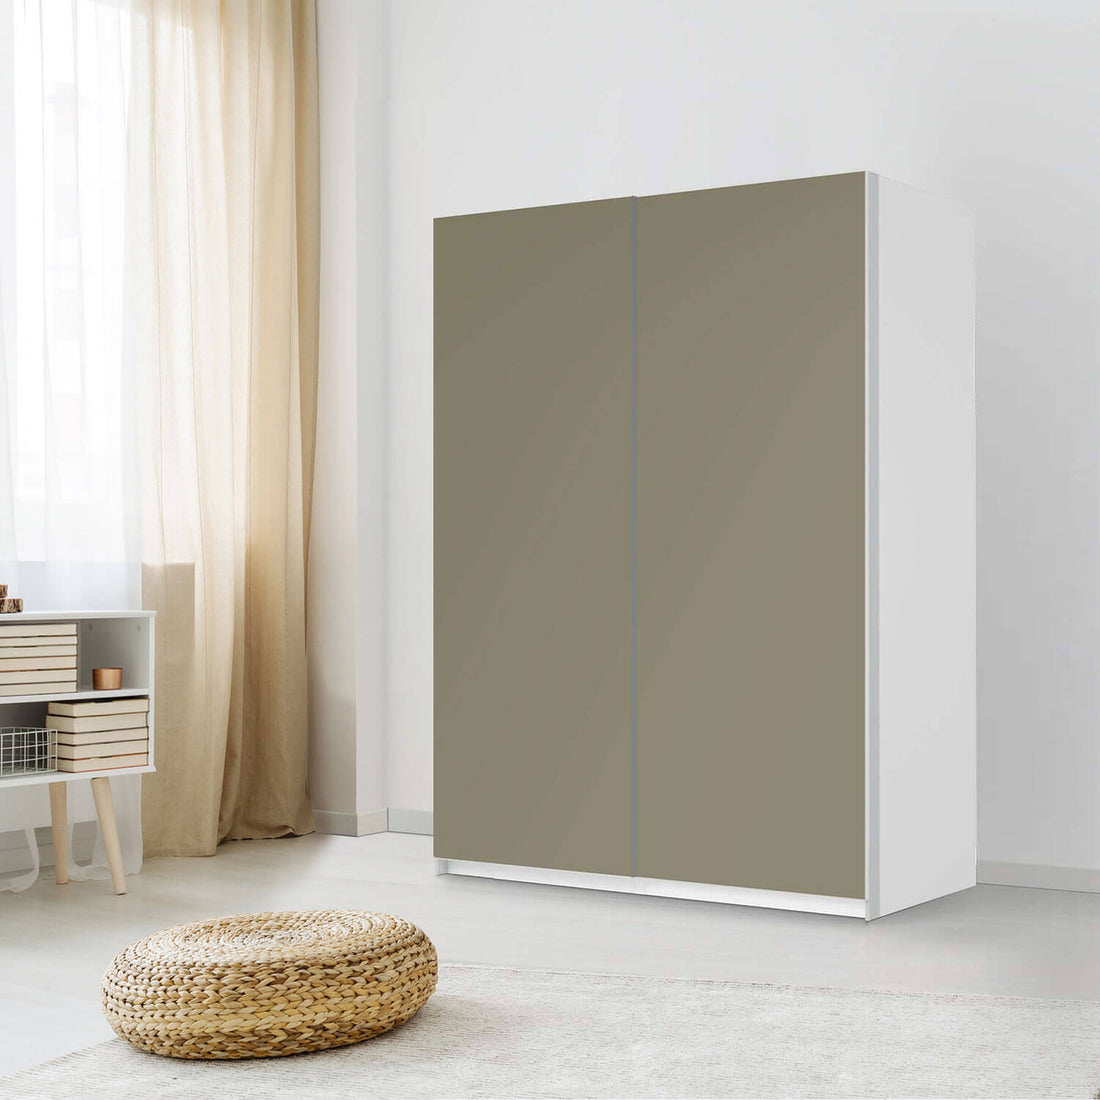 Möbel Klebefolie Braungrau Light - IKEA Pax Schrank 201 cm Höhe - Schiebetür 75 cm - Schlafzimmer